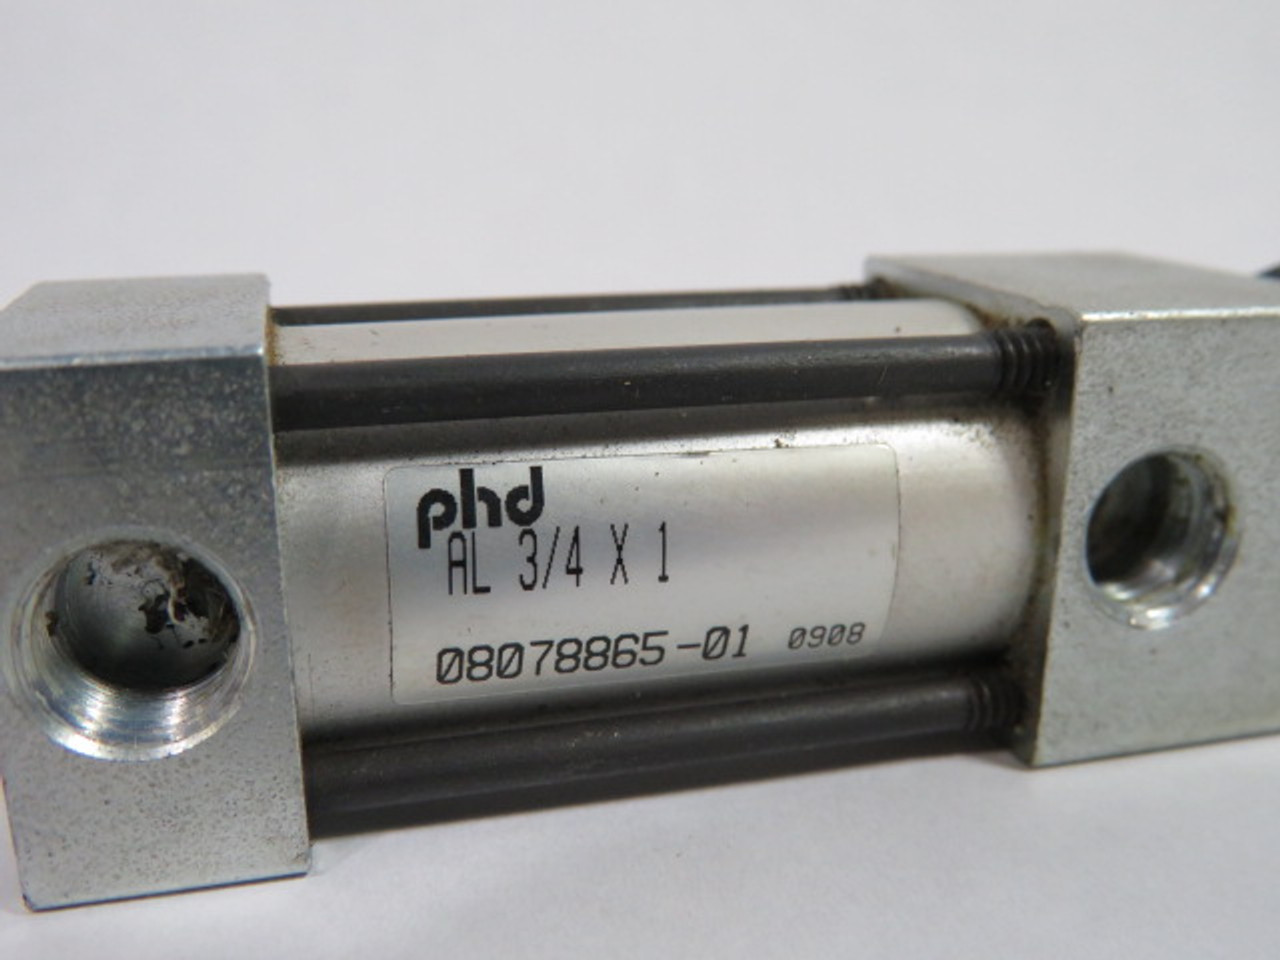 Phd AL-3/4X1 Pneumatic Air Cylinder 3/4" Bore 1" Stroke USED